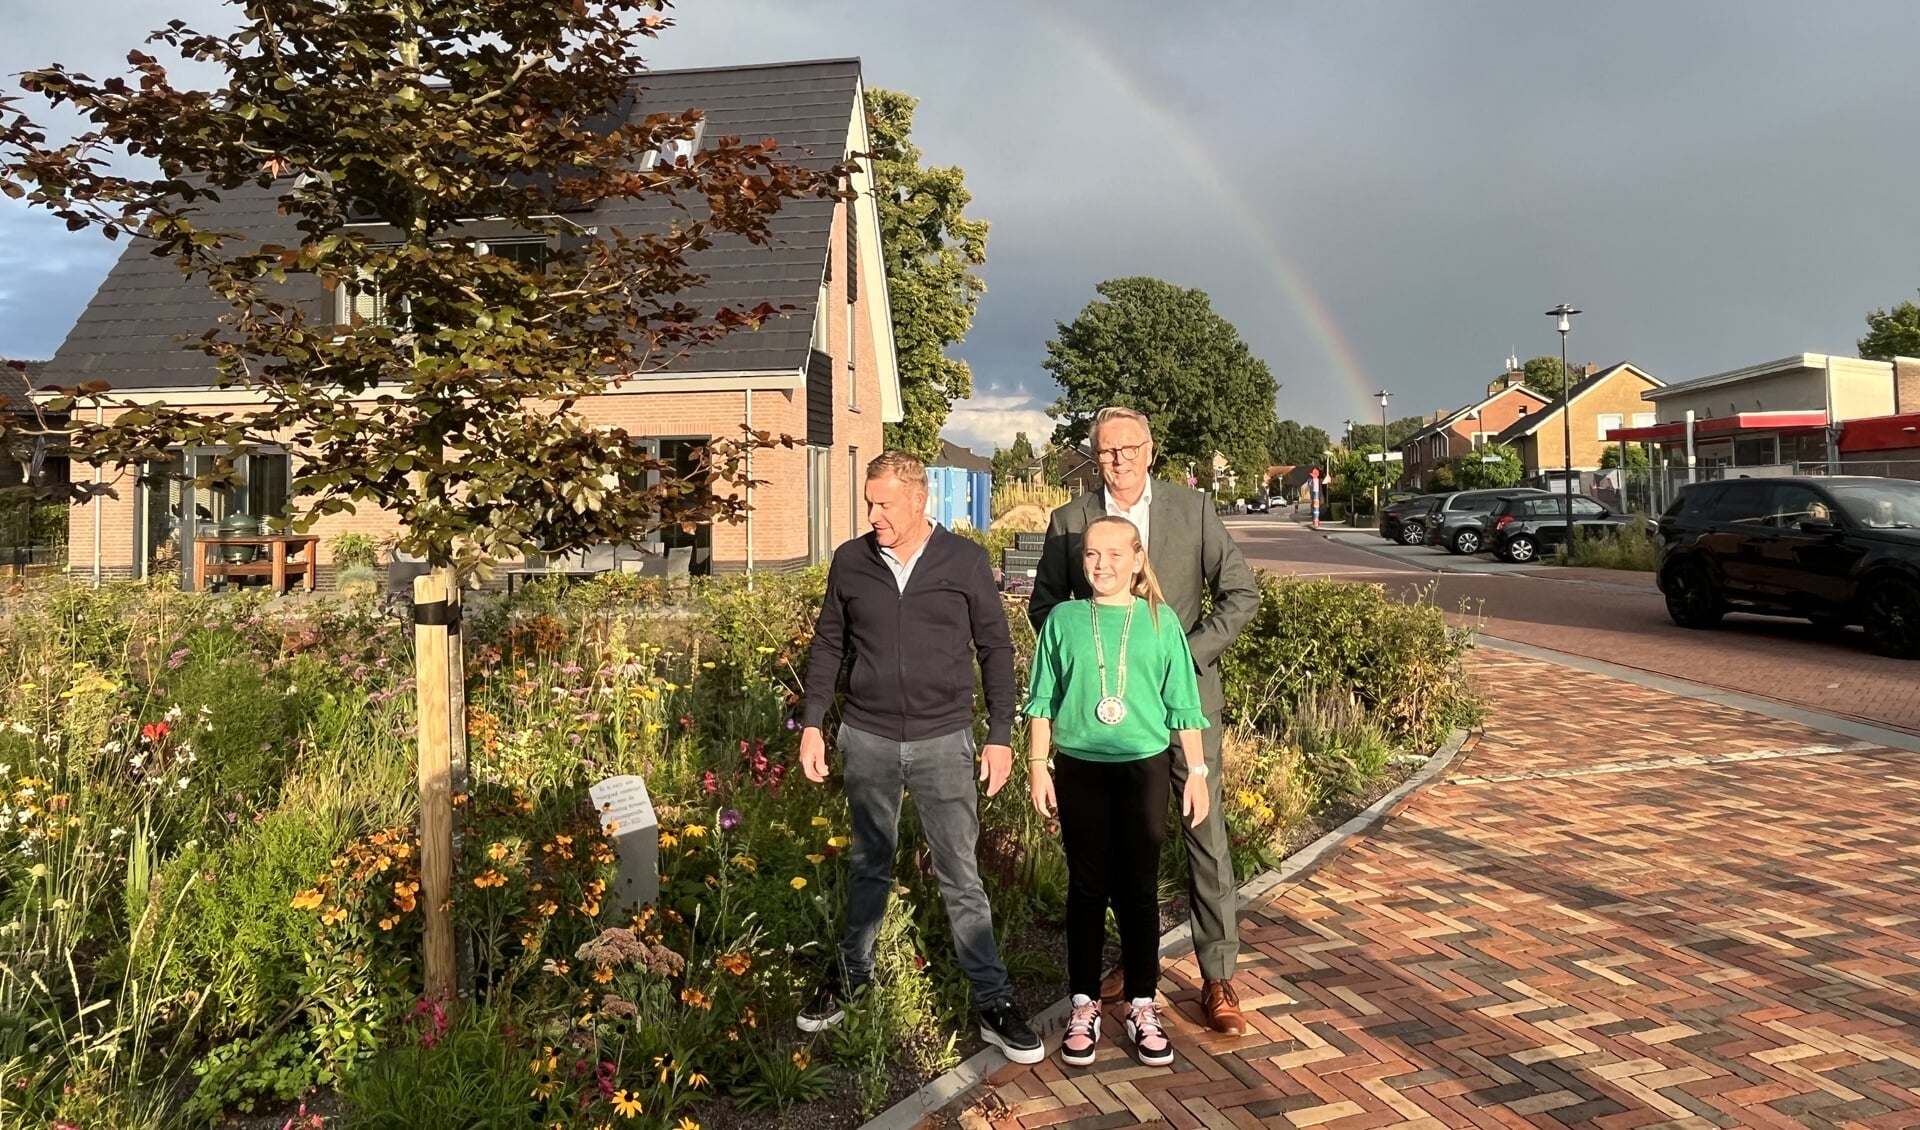 Tijdens de onthulling van de herdenkingsboom in Braamt verscheen een regenboog aan de hemel. Foto: Karin van der Velden